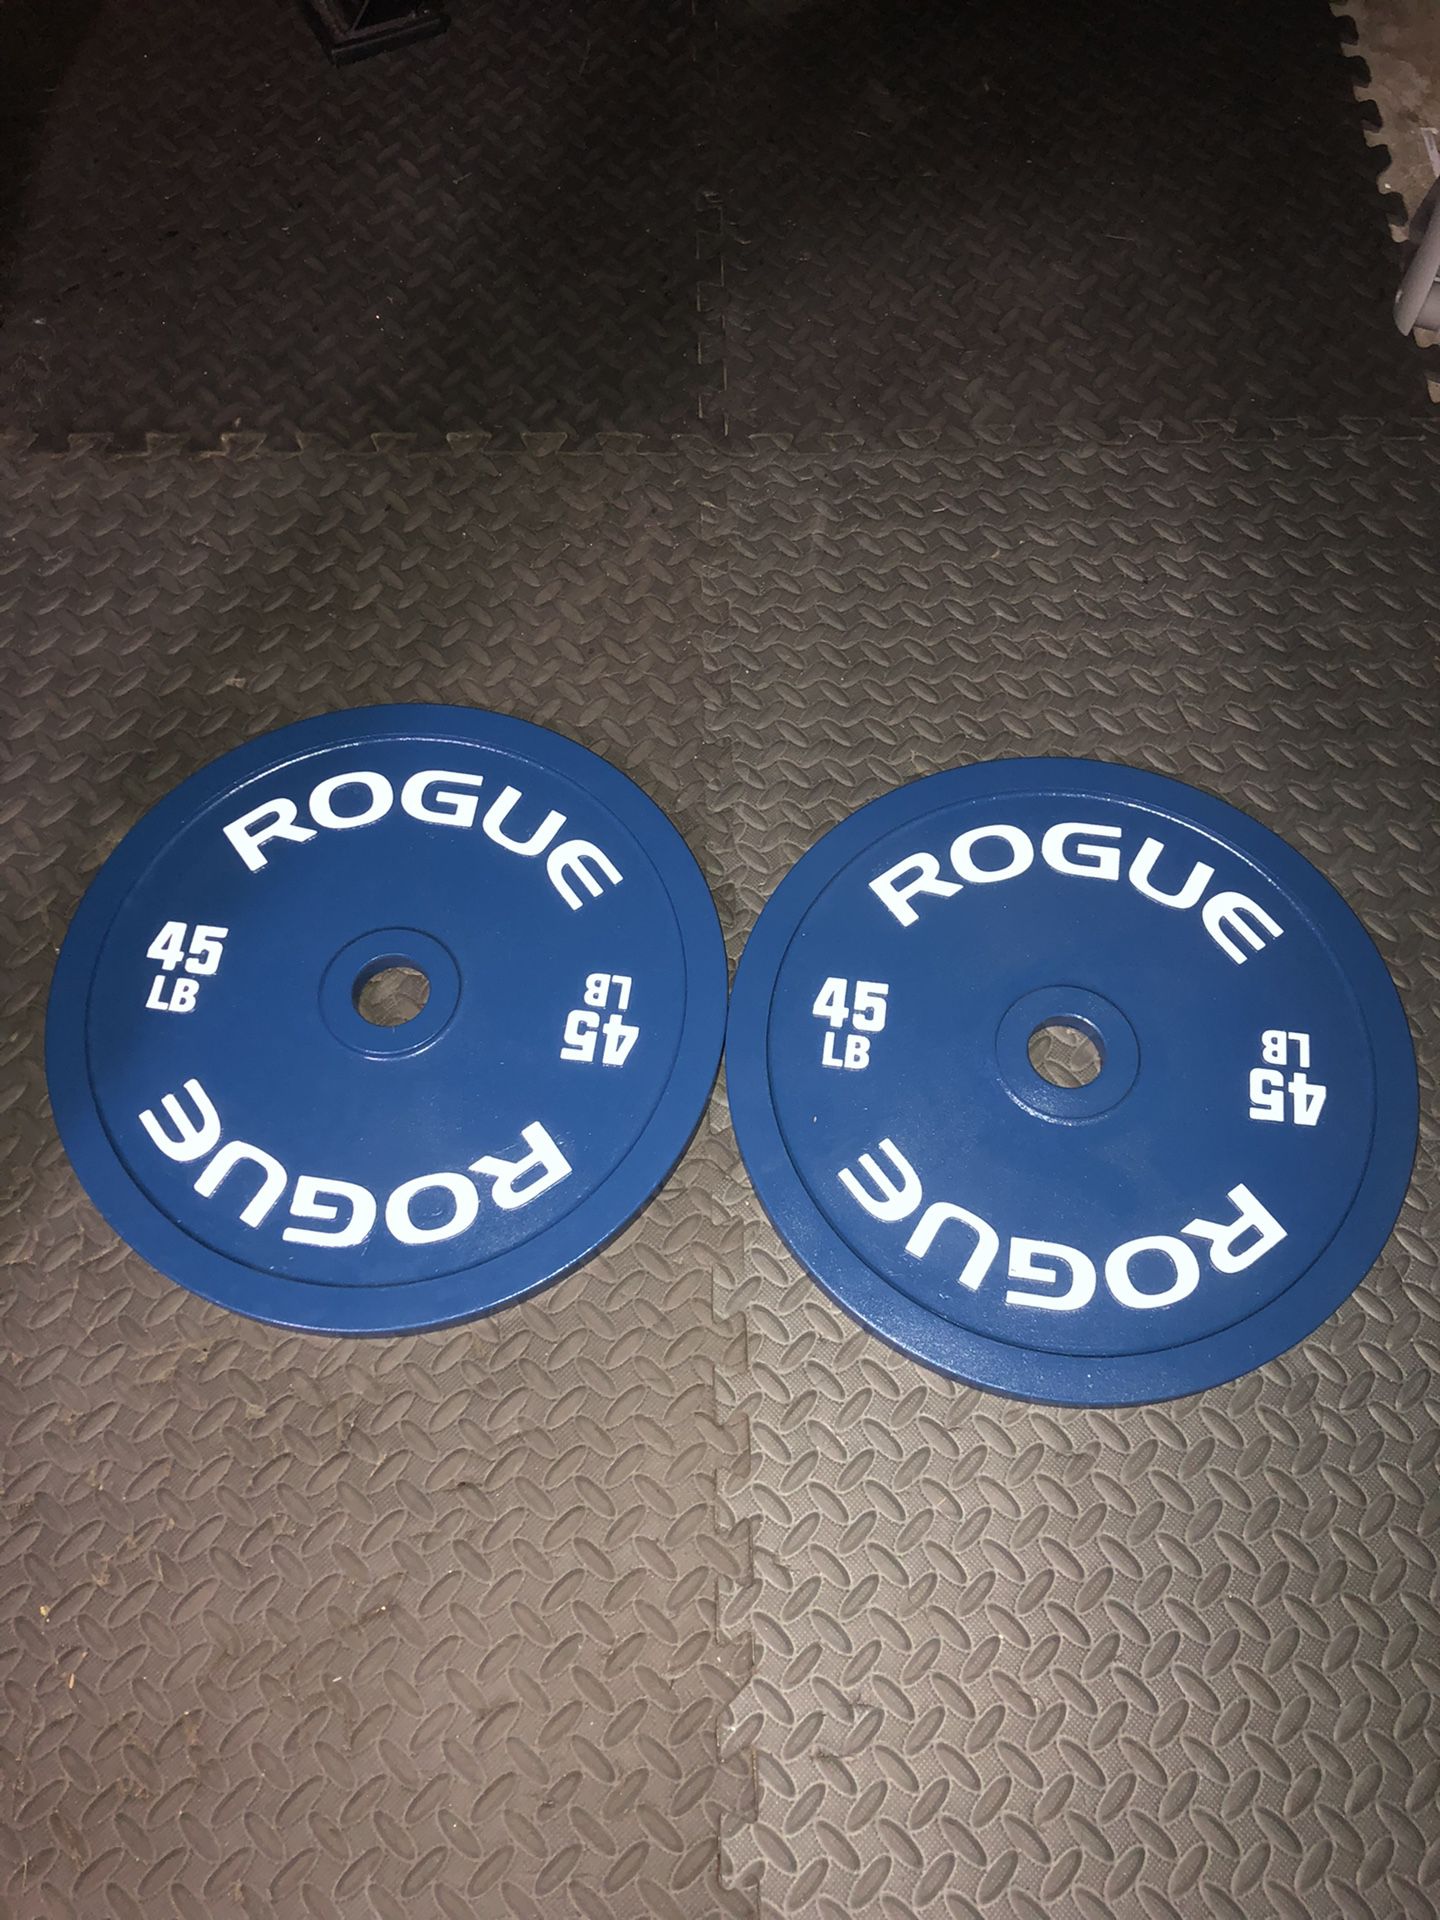 Rogue Calibrated Plates